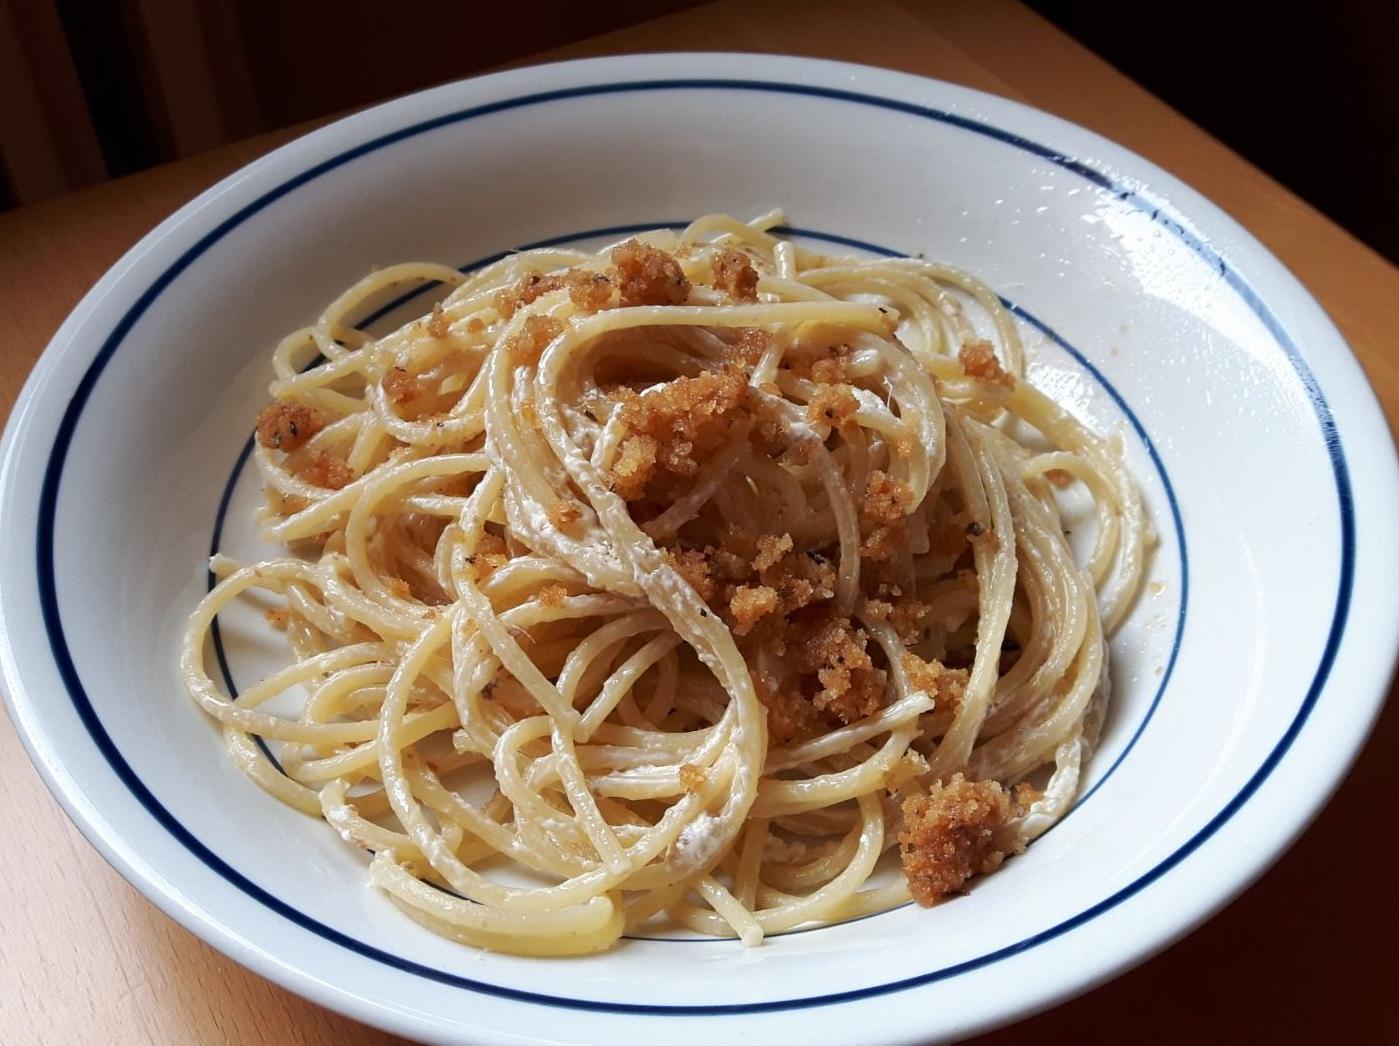 Spaghetti alle acciughe con limone e pane fritto